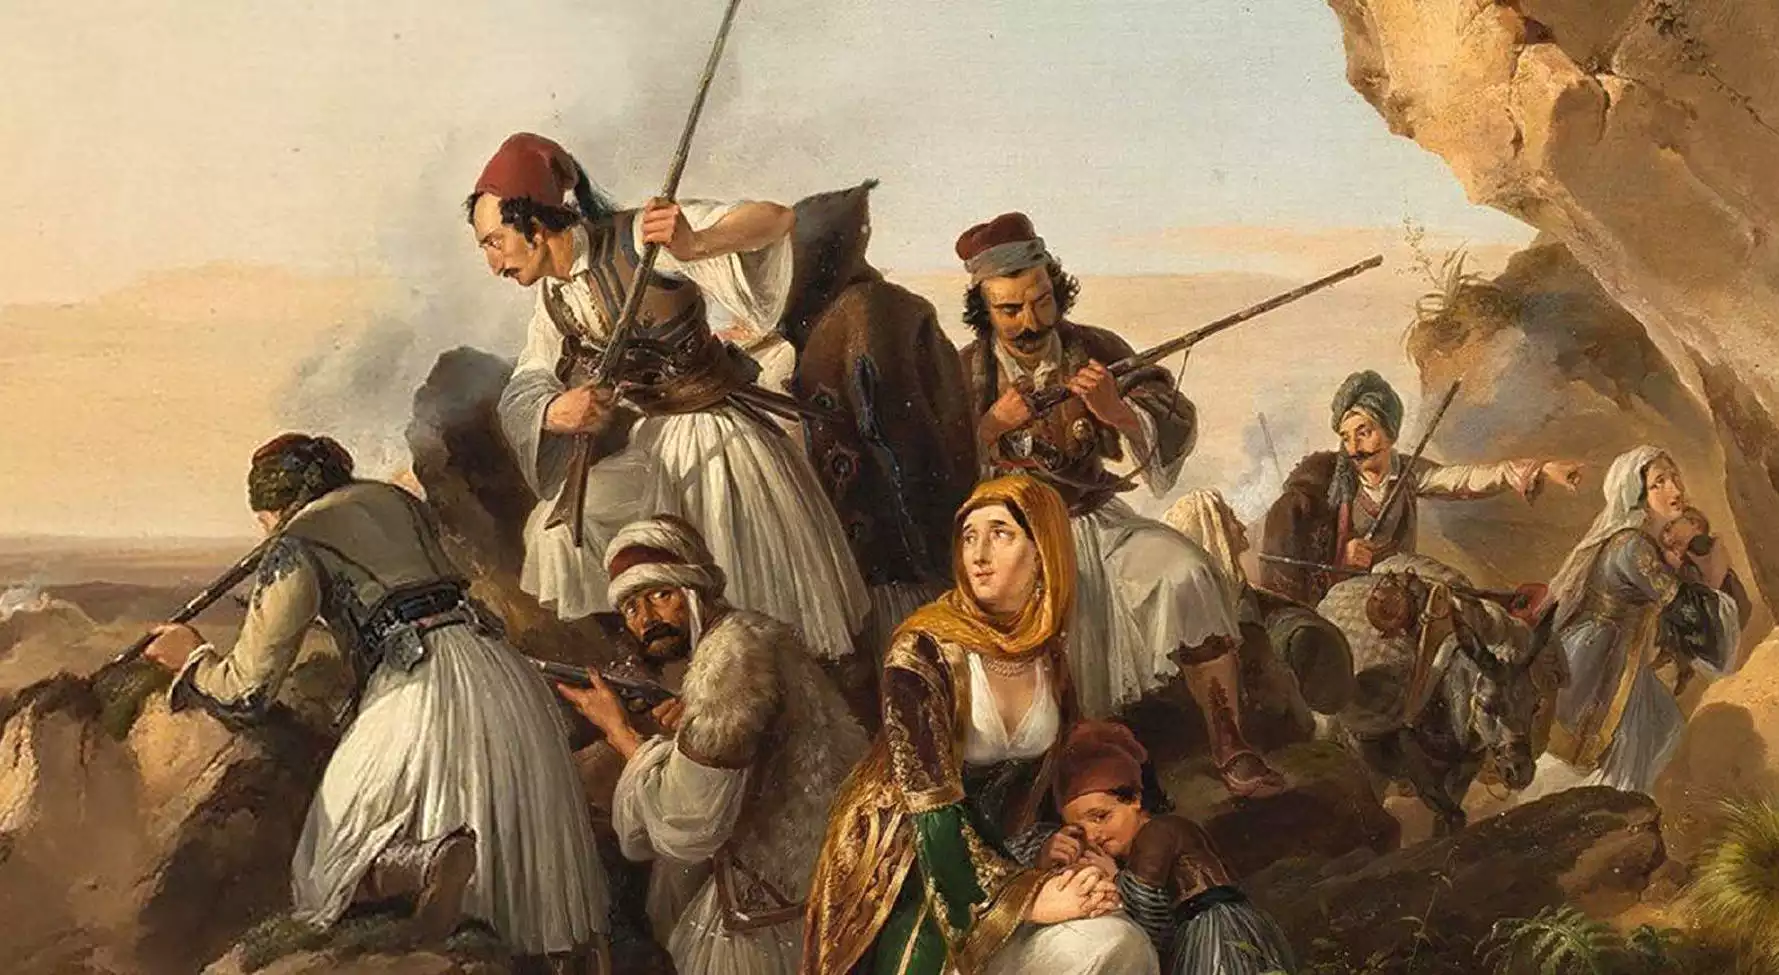 Σουλιώτες πολεμιστές με παραδοσιακές φορεσιές, οπλισμένοι με όπλα της εποχής, στέκονται περήφανα σε μια ορεινή κορυφή.